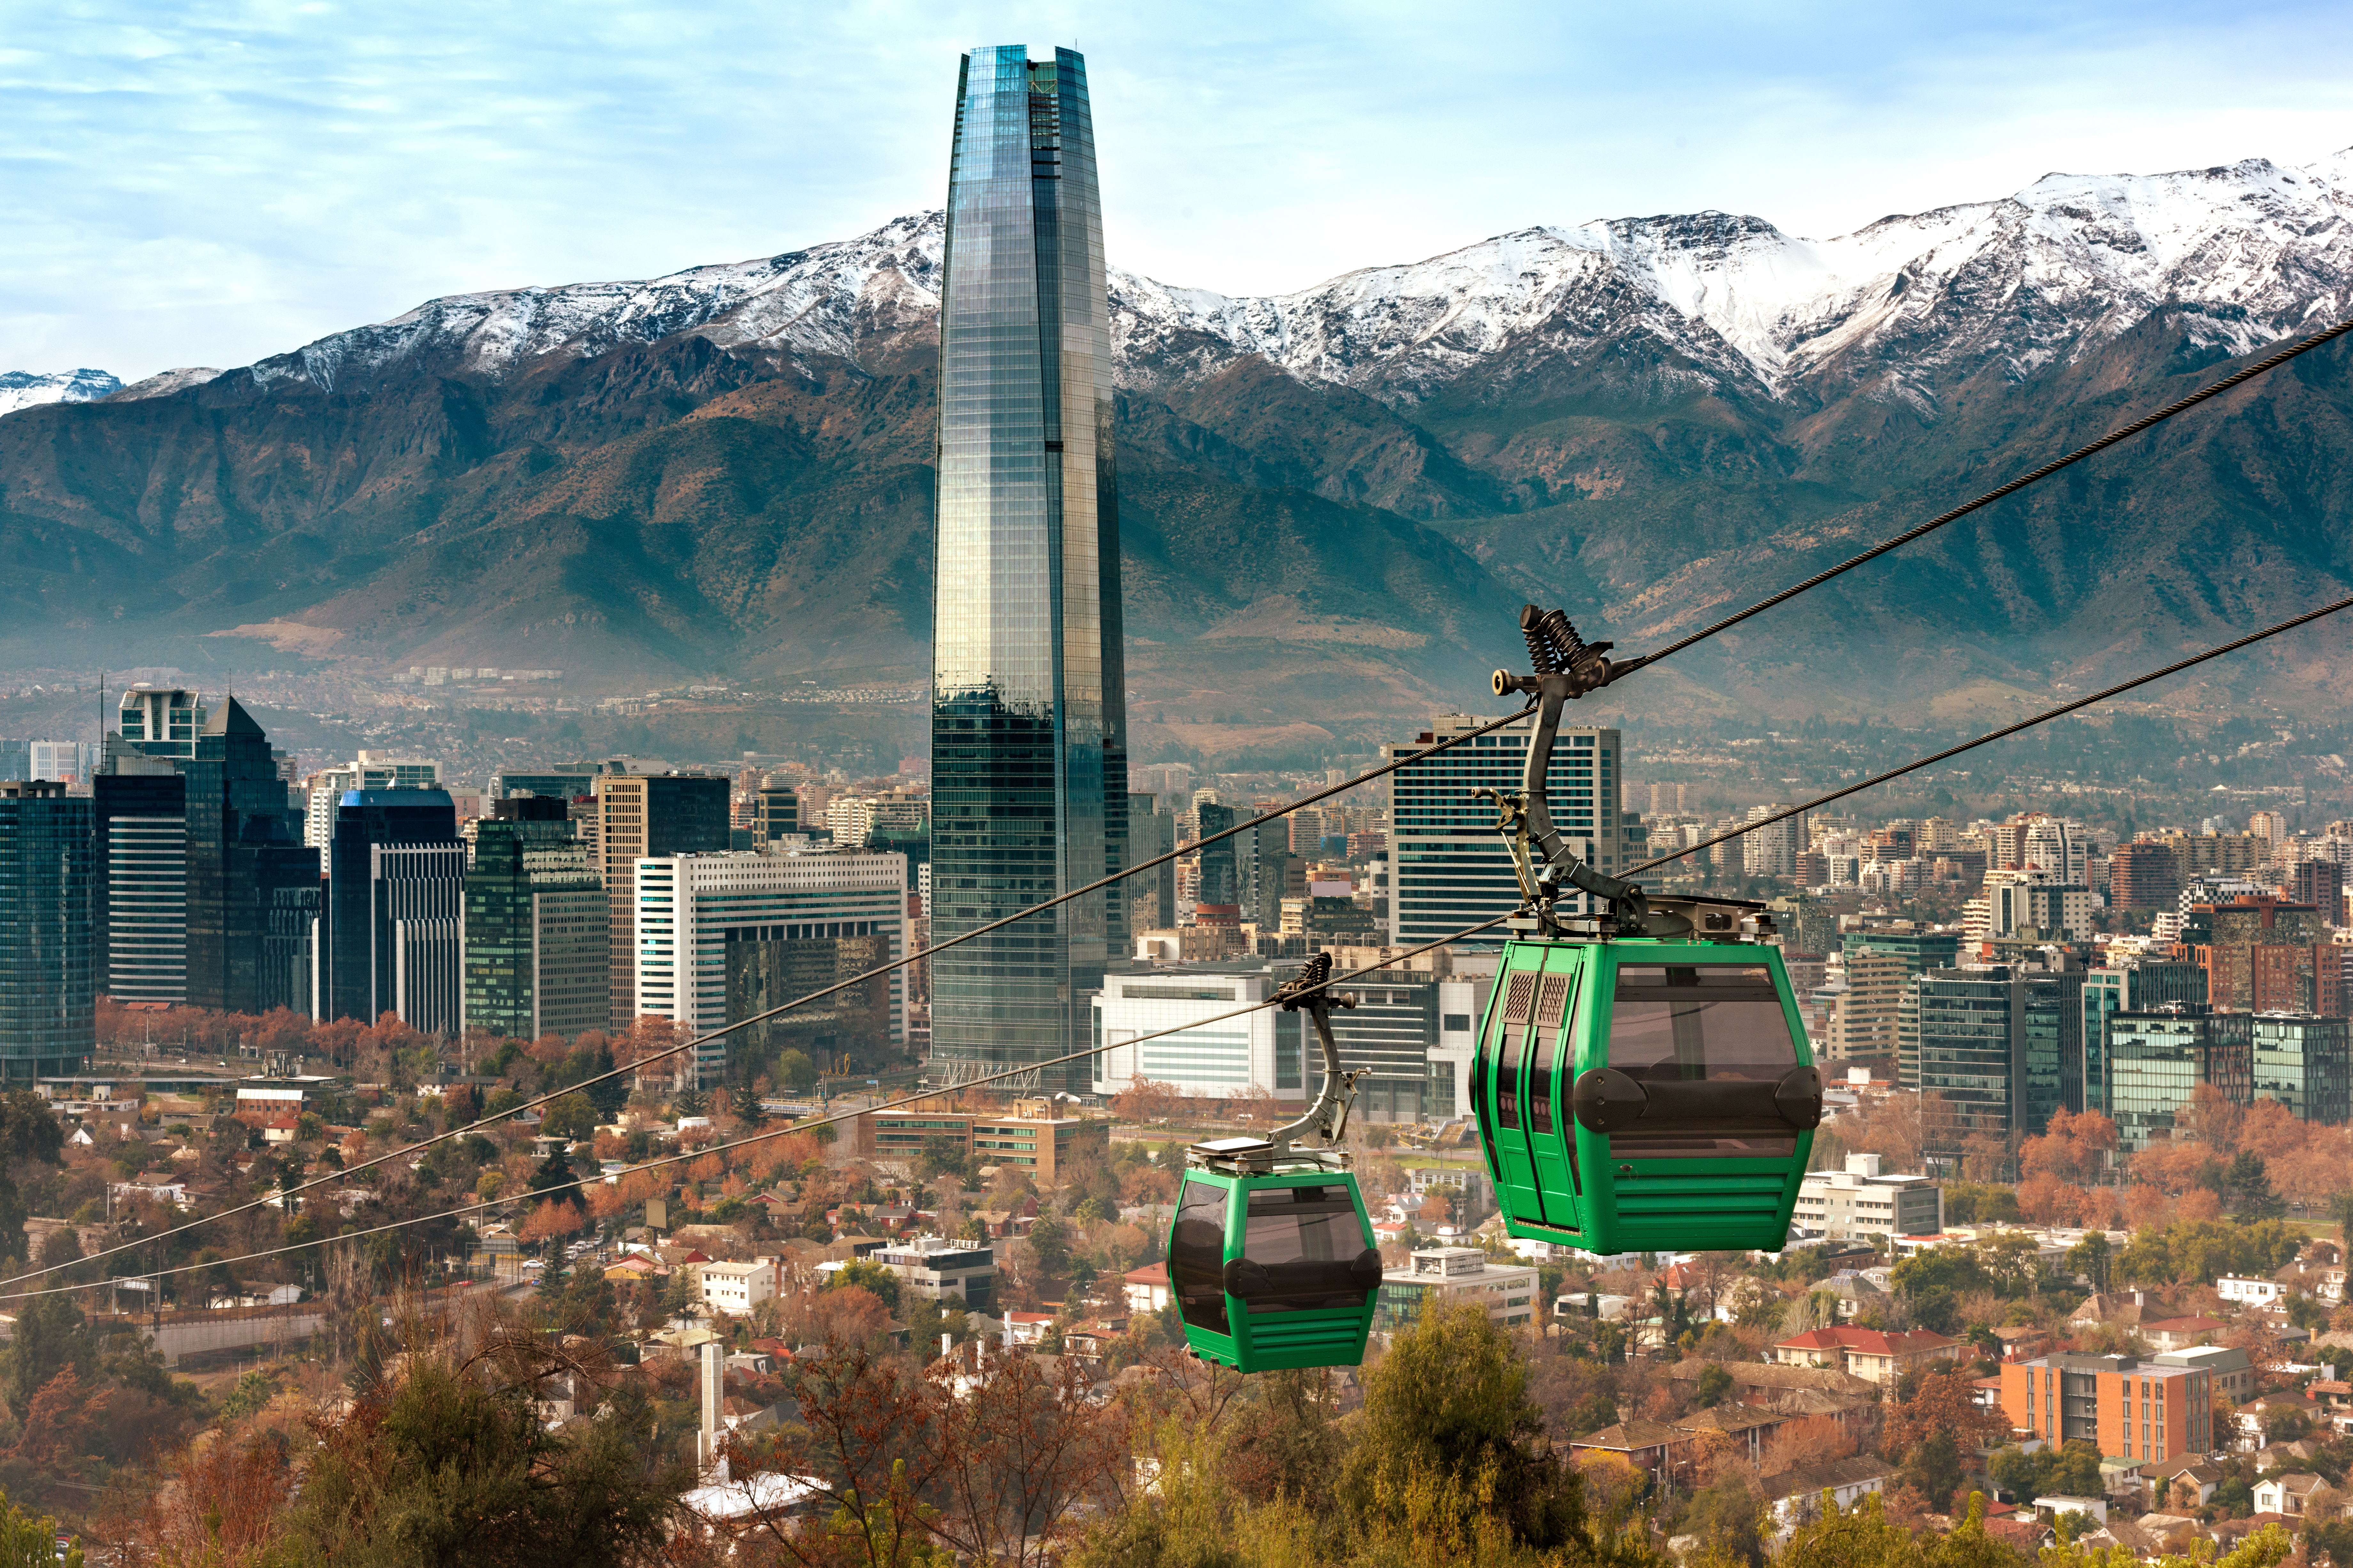 Naturalization in Chile